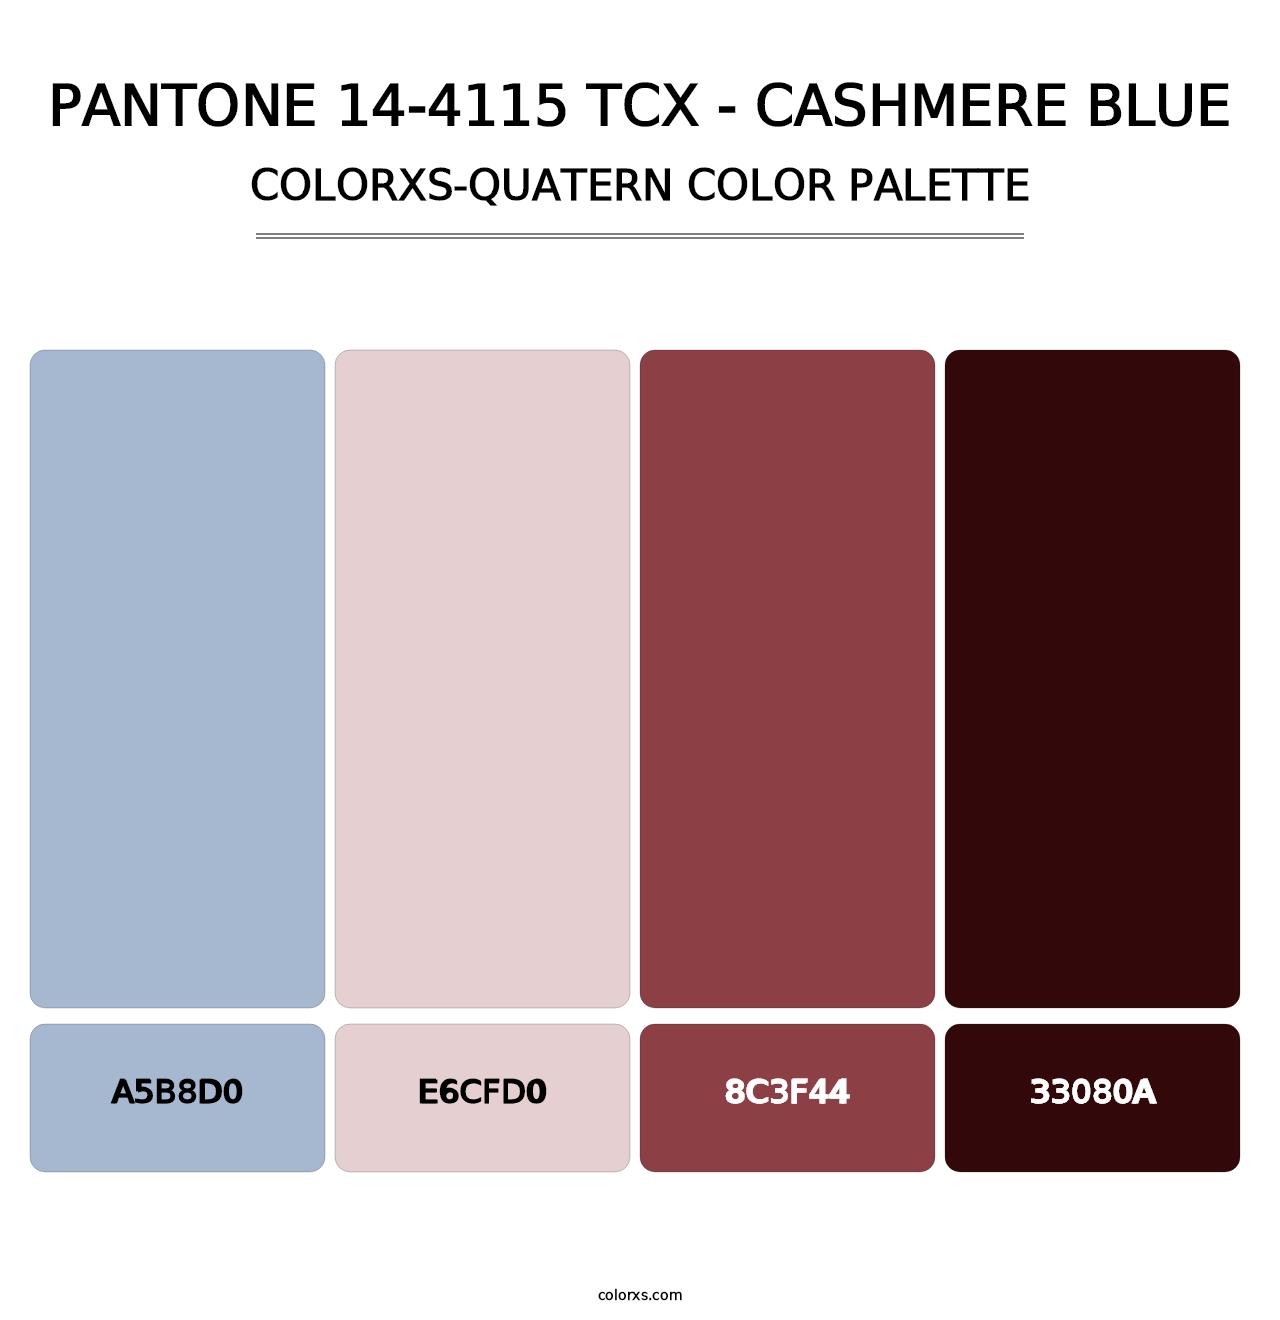 PANTONE 14-4115 TCX - Cashmere Blue - Colorxs Quatern Palette